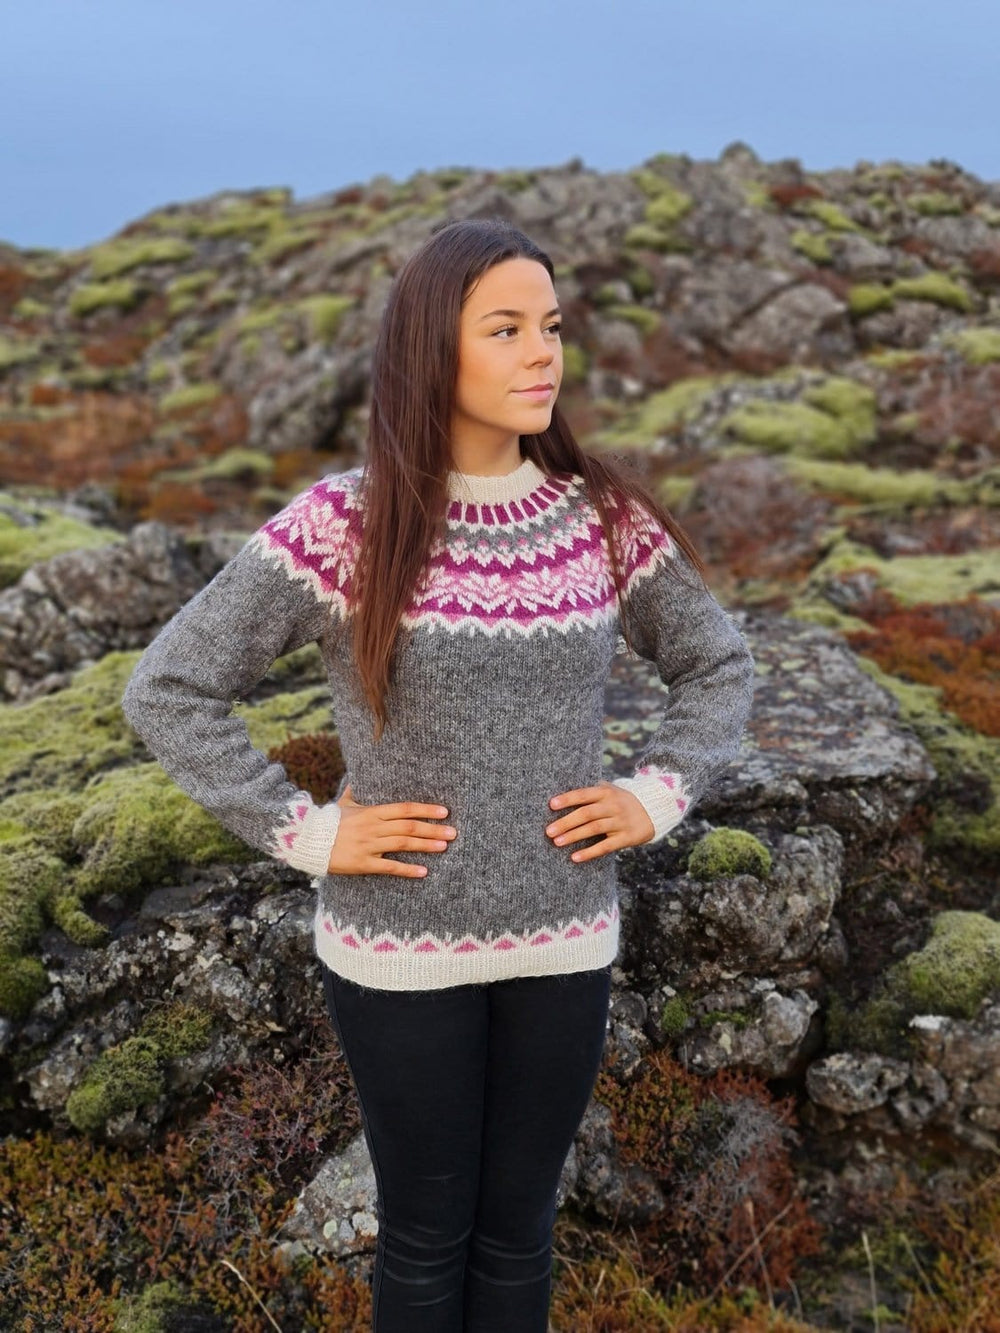 Icelandic women's Sweaters | Ladies wool jumpers, cardigan, pullover ...